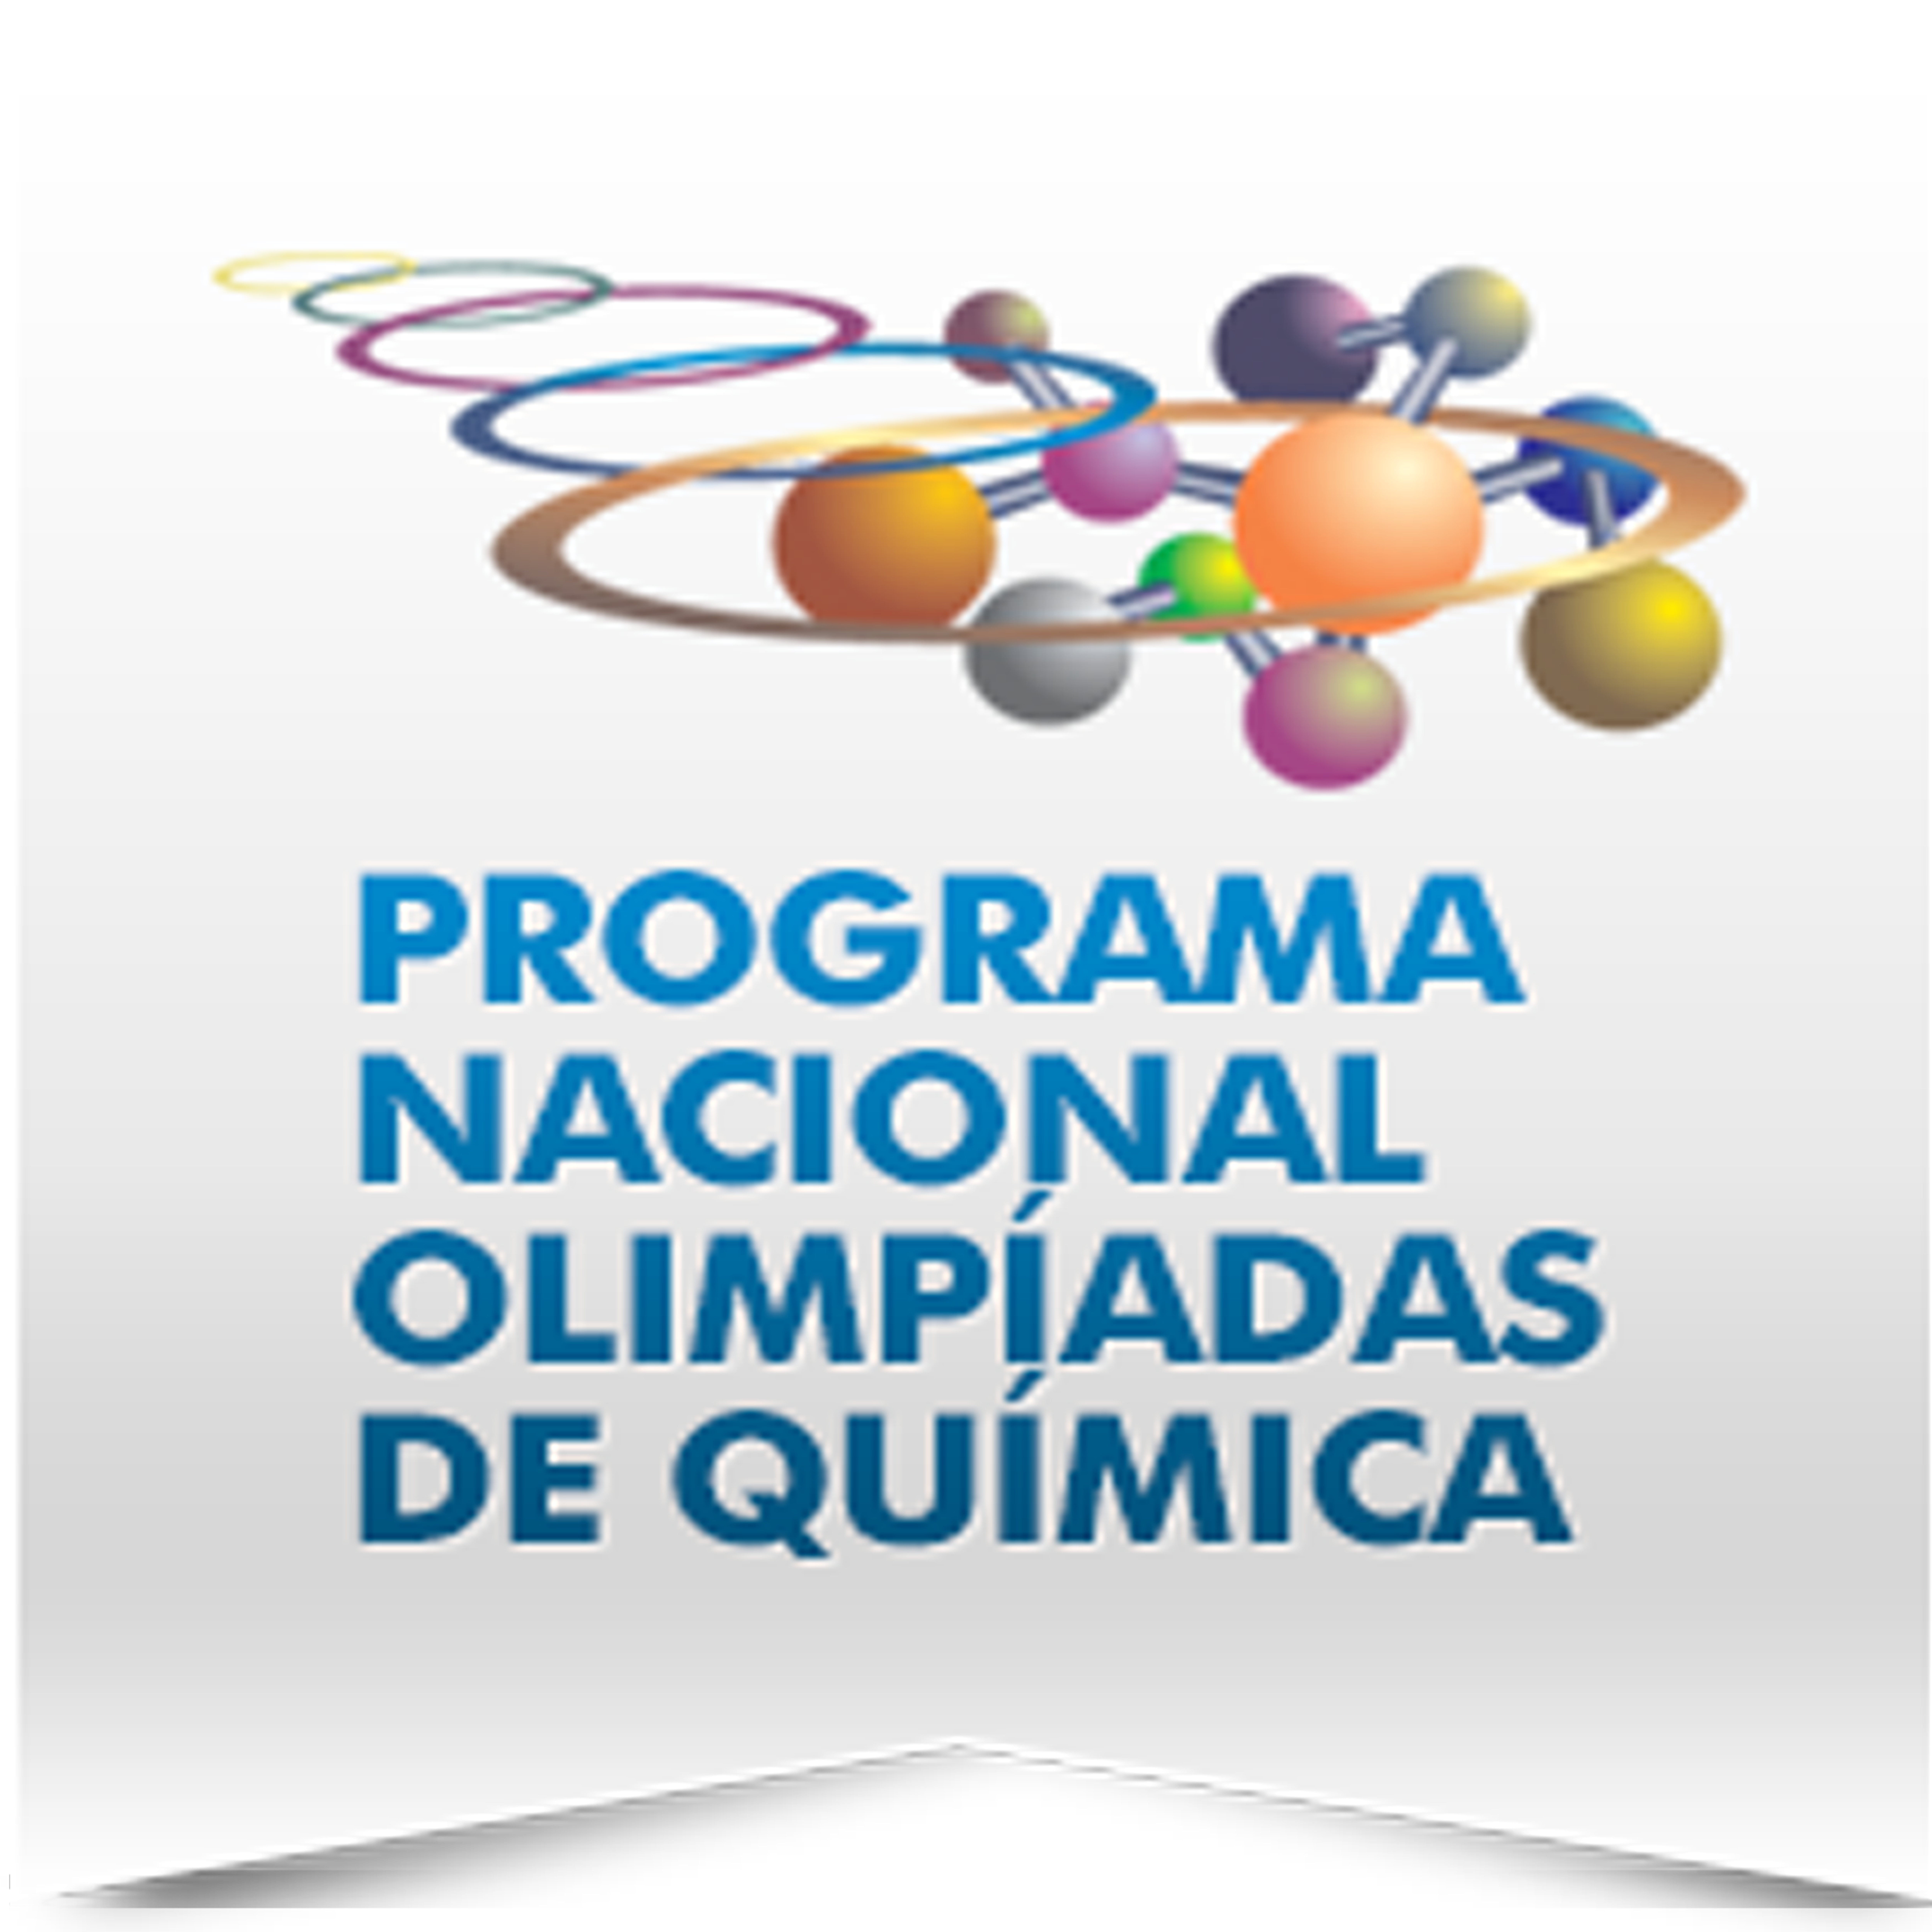 CLASSIFICADOS PARA A OLIMPÍADA BRASILEIRA DE QUÍMICA - FASE III - 2020